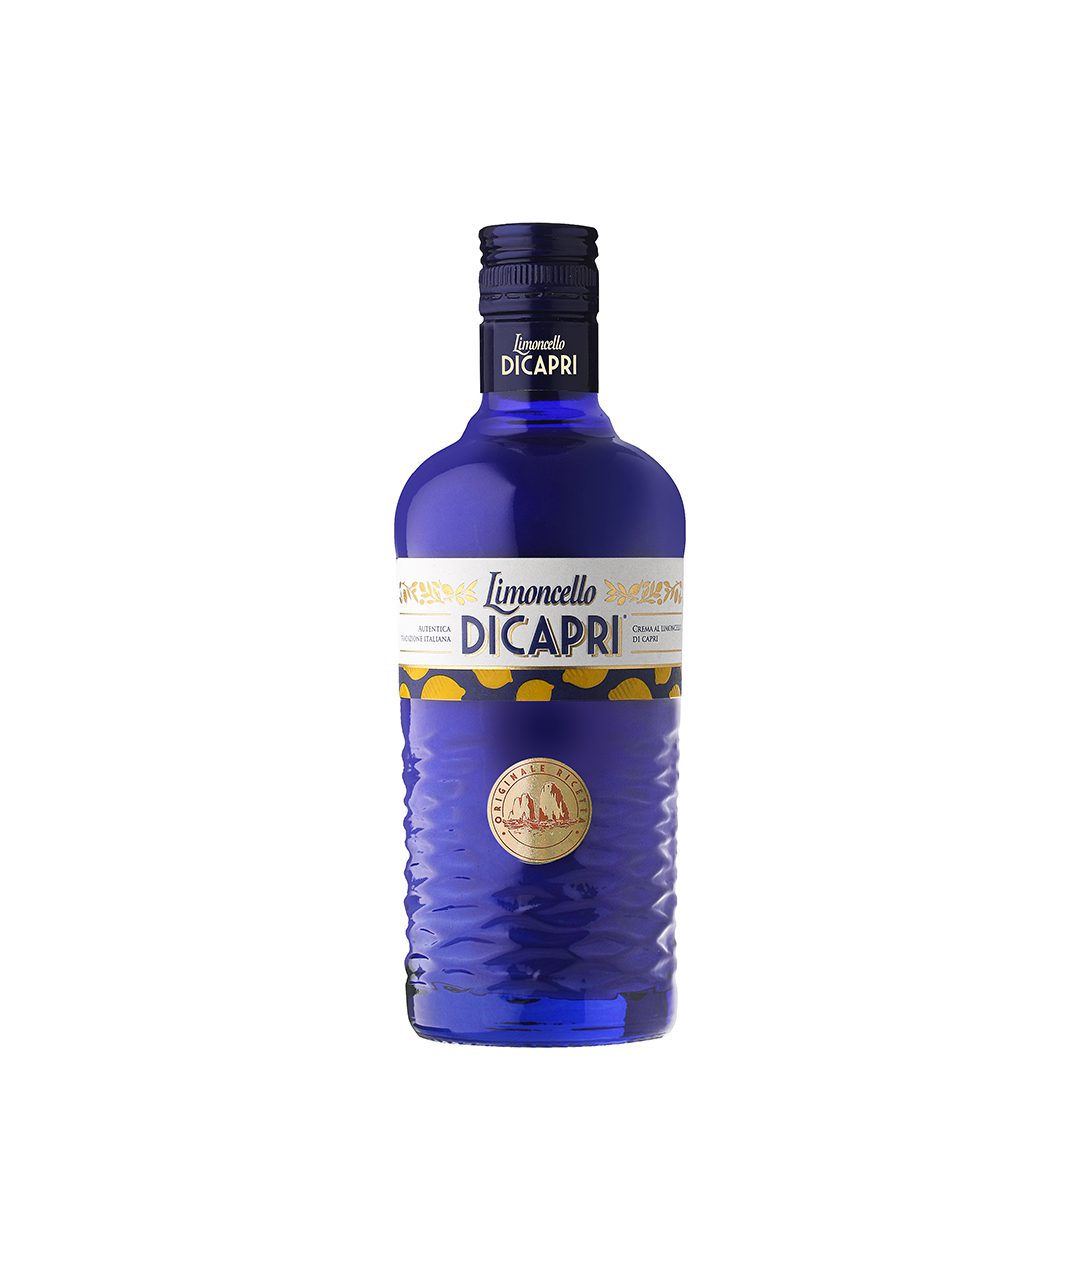 Blue 500ml glass bottle of Limoncello Di Capri Cream.